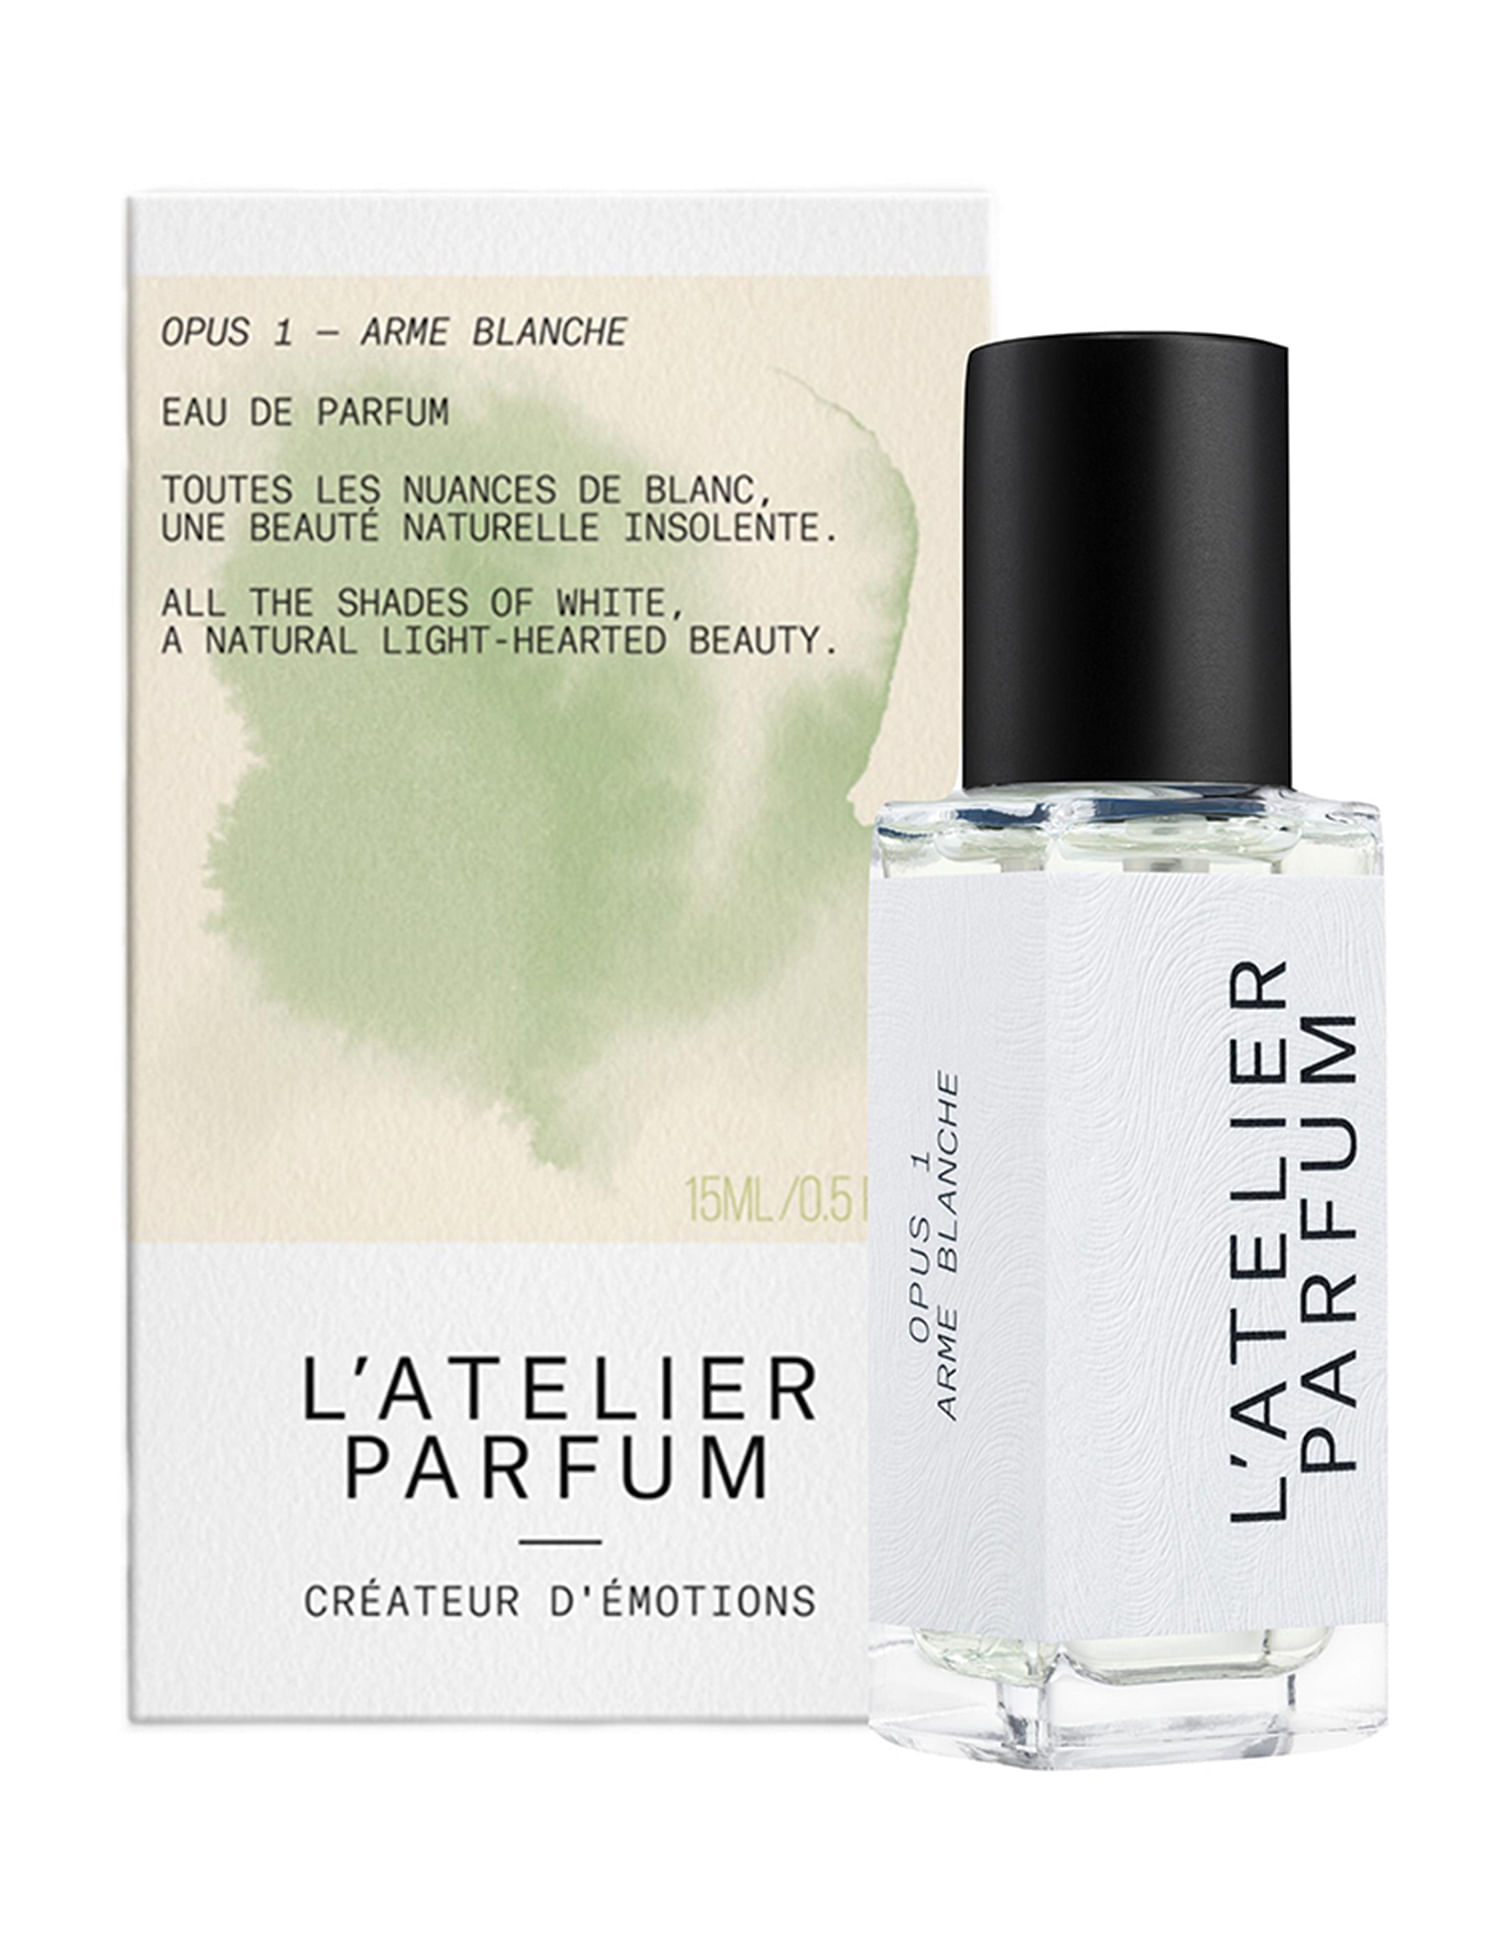 Духи l'Atelier Parfum Opus 1 douce Insomnia отзывы. L'Atelier Parfum douce Insomnia отзывы покупателей. Ательер отзывы